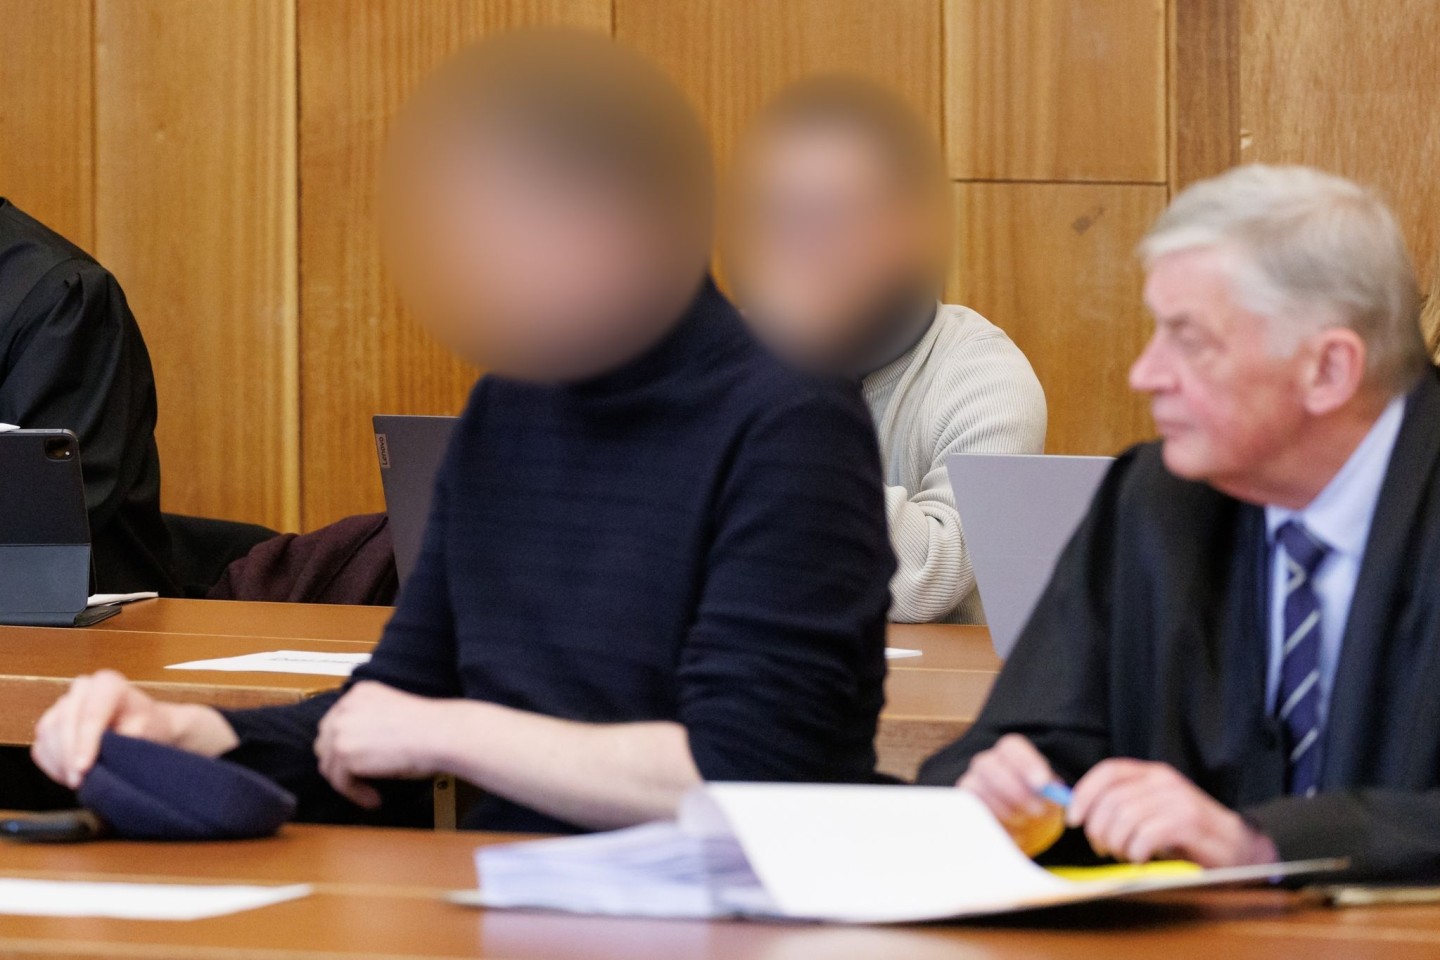 Zwei der insgesamt vier wegen fahrlässiger Tötung sowie fahrlässiger Körperverletzung angeklagten Männer beim Prozessbeginn in Schweinfurt.